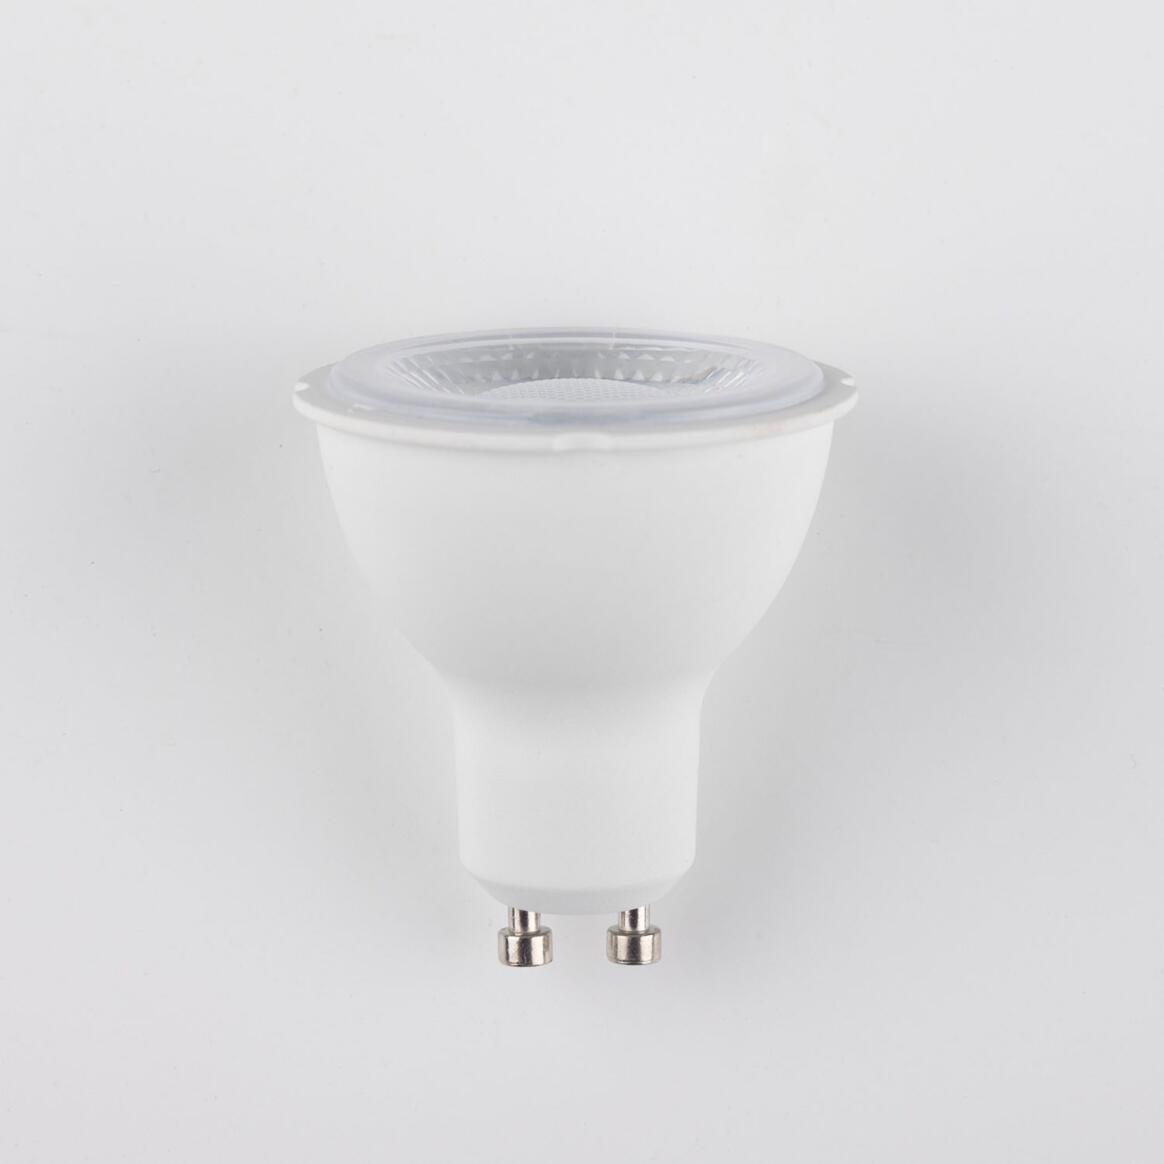 Ampoule GU10 LED spot light variable d'intensité 5W 2700k 380lm 5.4cm main product image